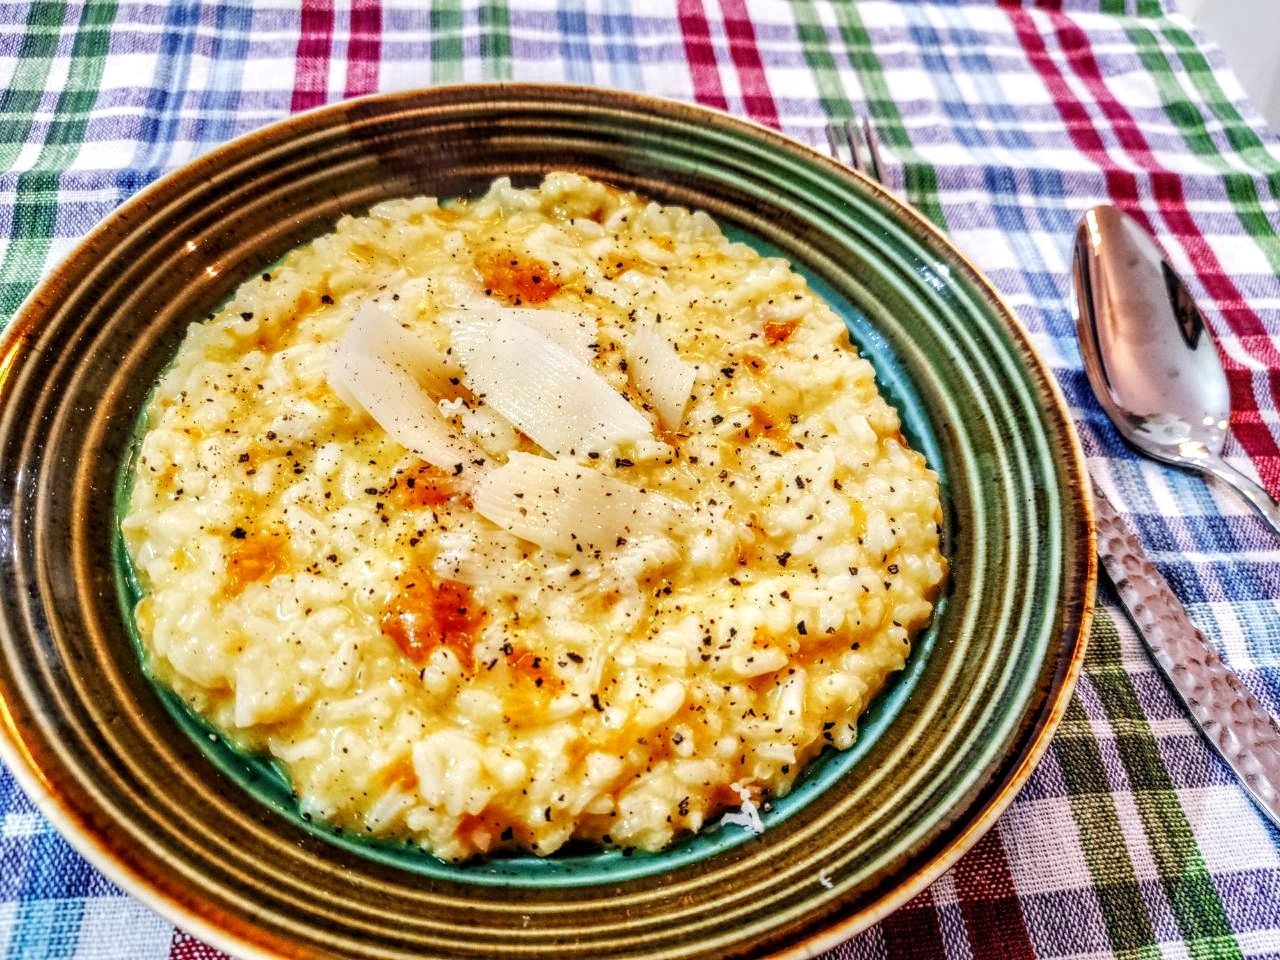 Primi piatti gluten free senza burro: risotto Carnaroli con zucca curcuma e formaggio Piave DOP